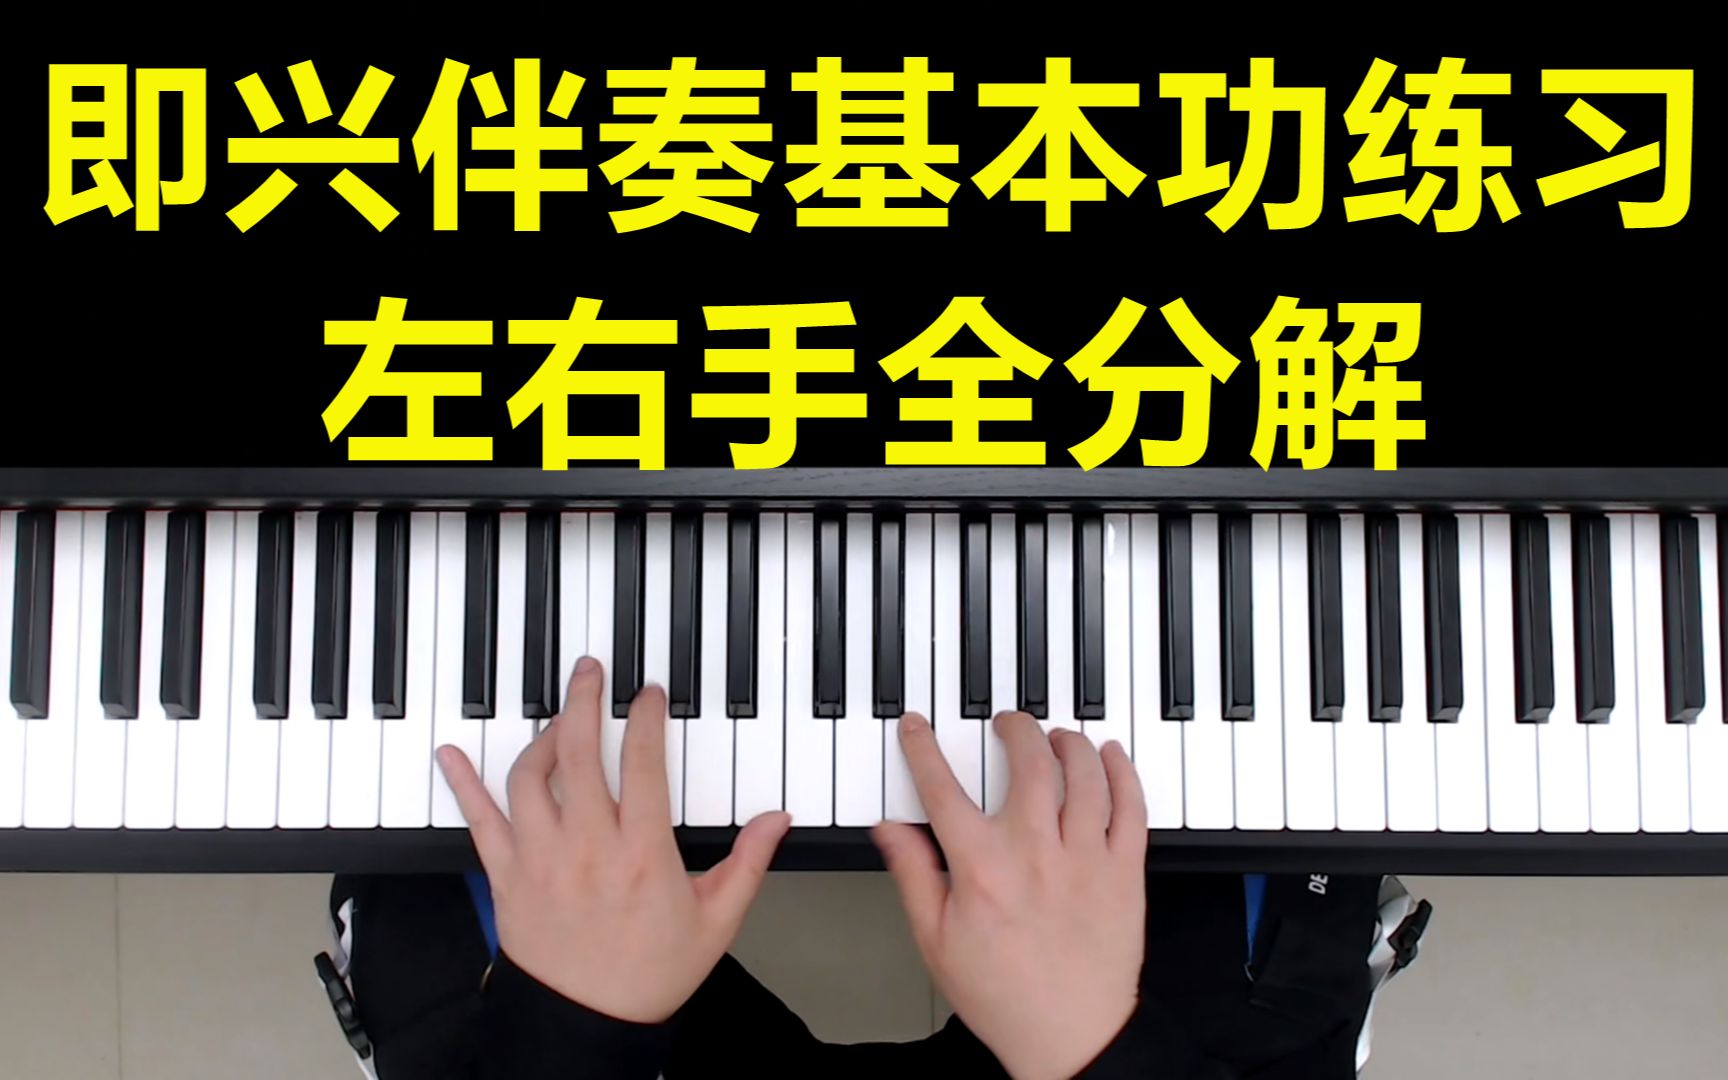 钢琴教学:即兴伴奏基本功练习左右手全分解